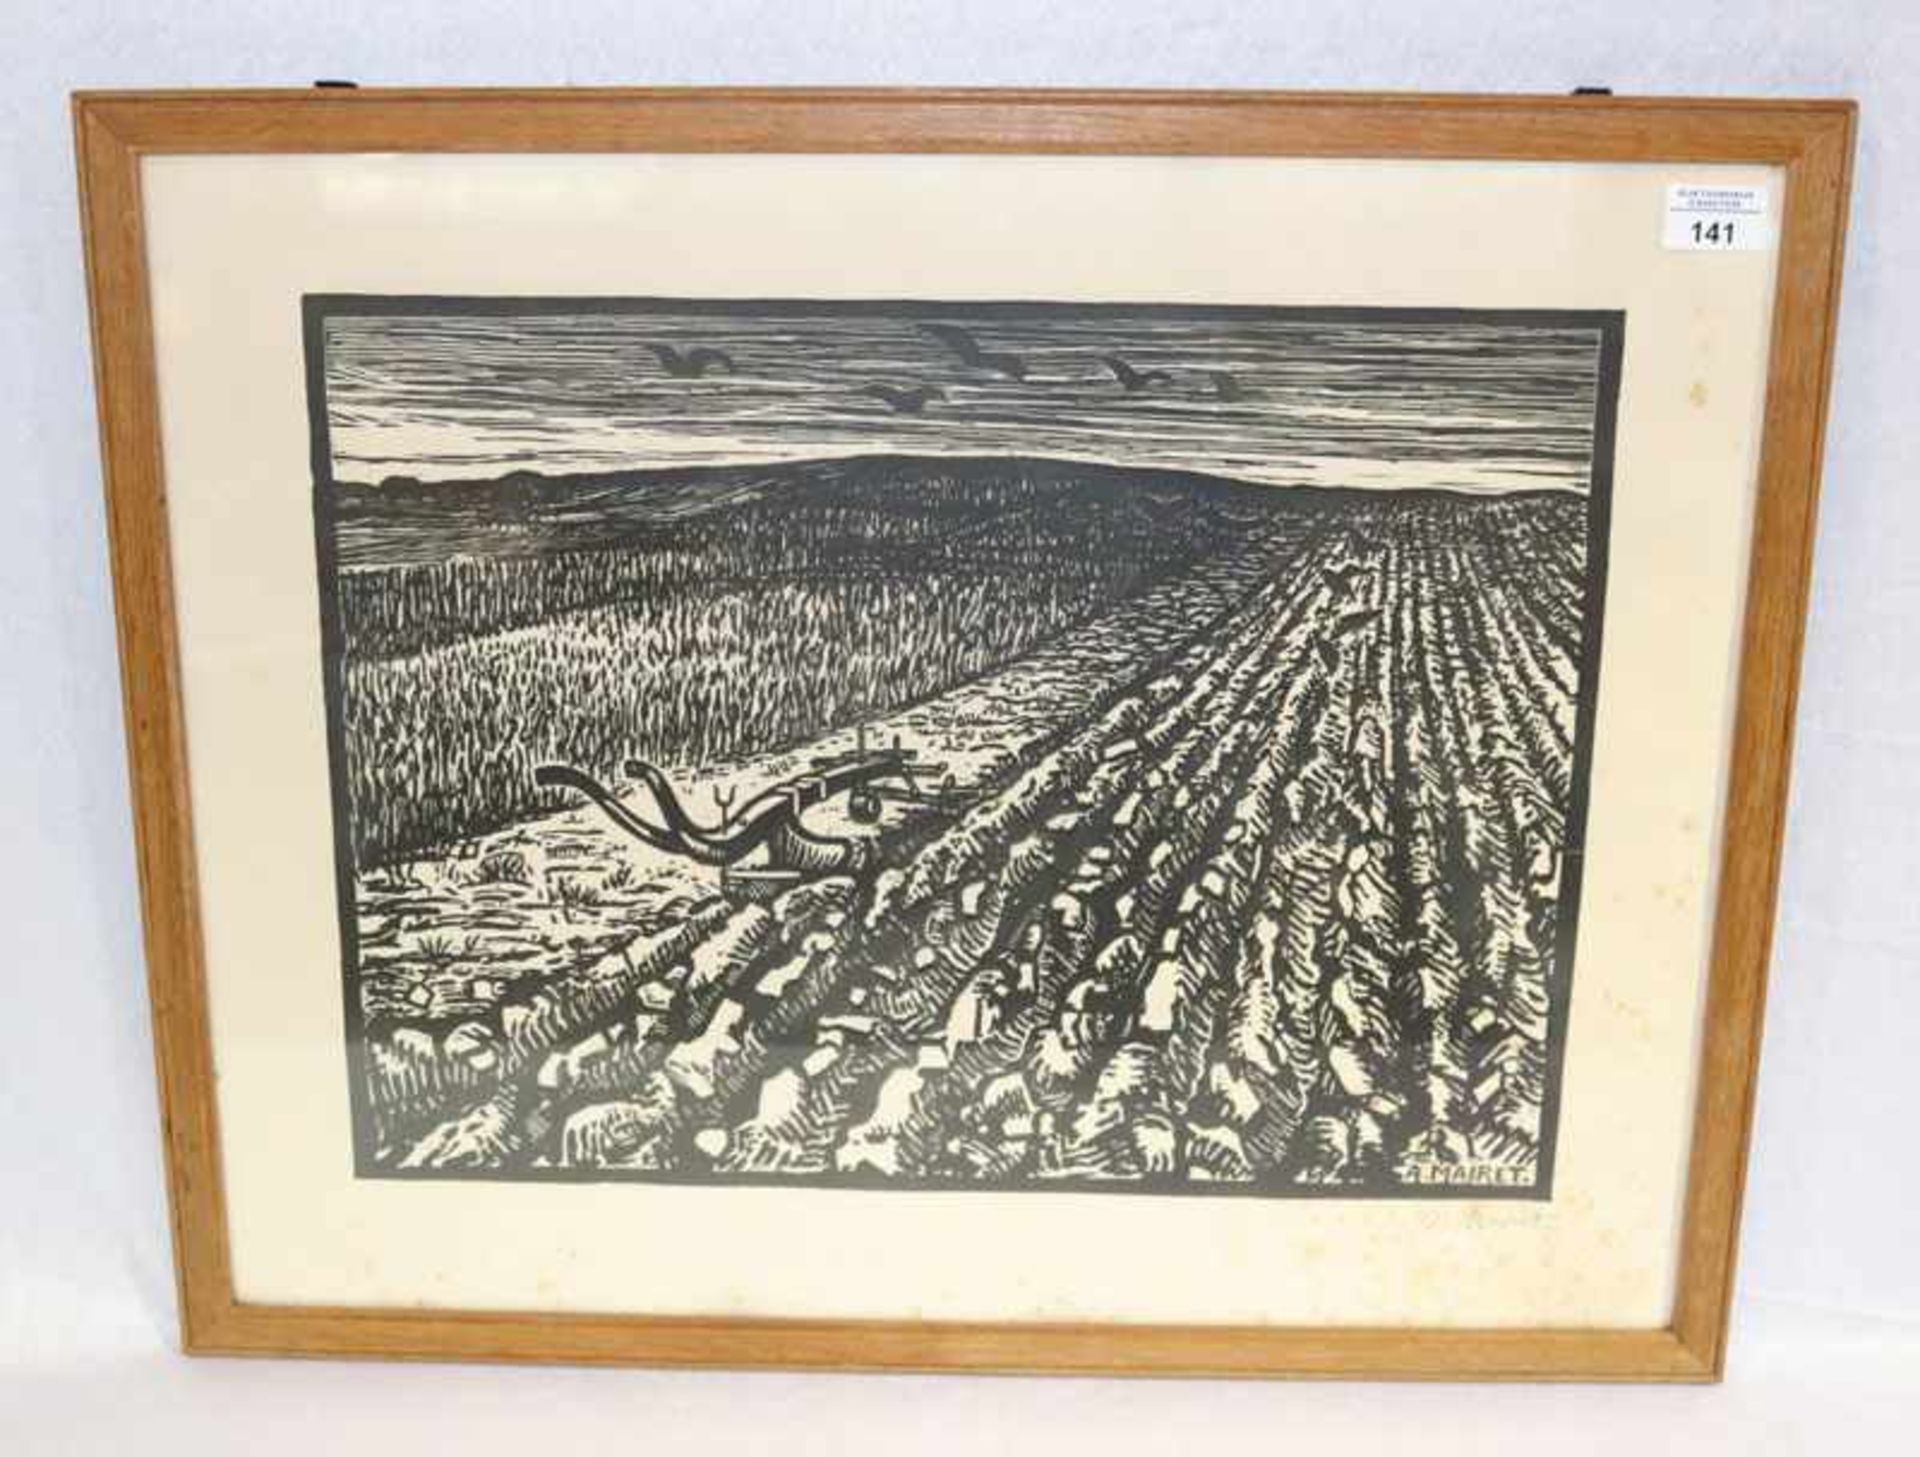 Holzschnitt 'Landschafts-Szenerie', signiert A. (Alexandre) Mairet, * 1880 La Tour-de-Peilz + 1947